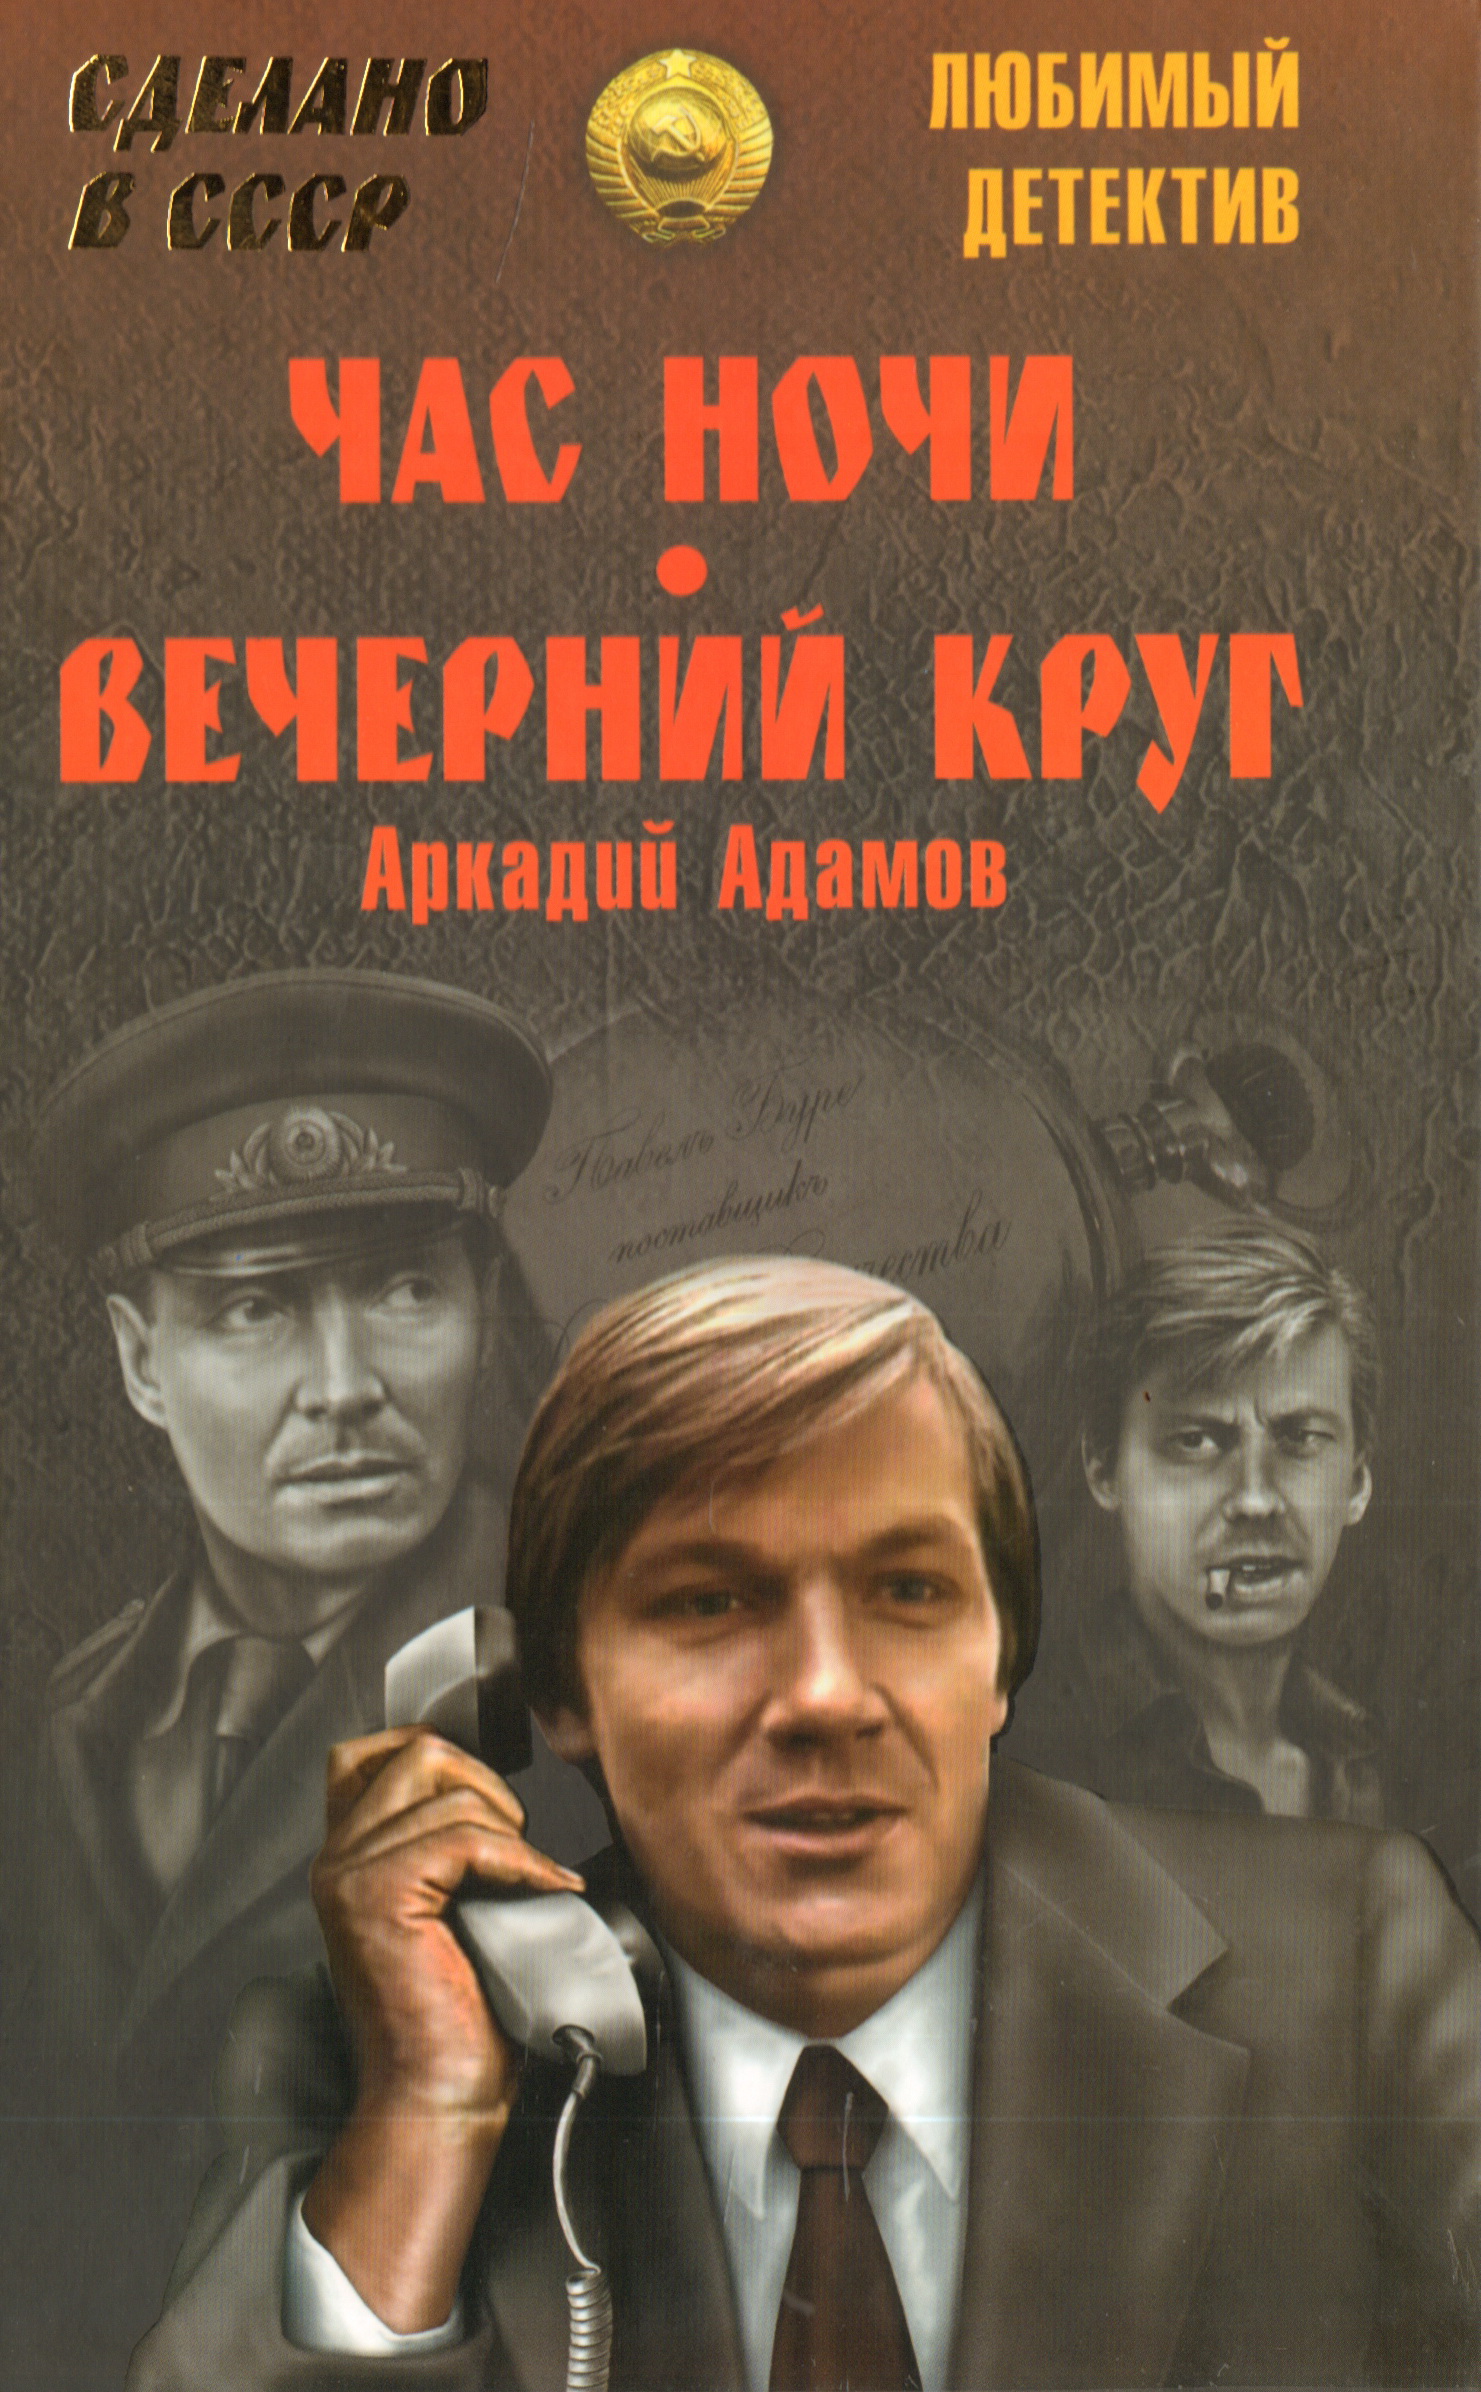 Слушать аудио детектив книгу. Советские детективы. Советские детективы книги.